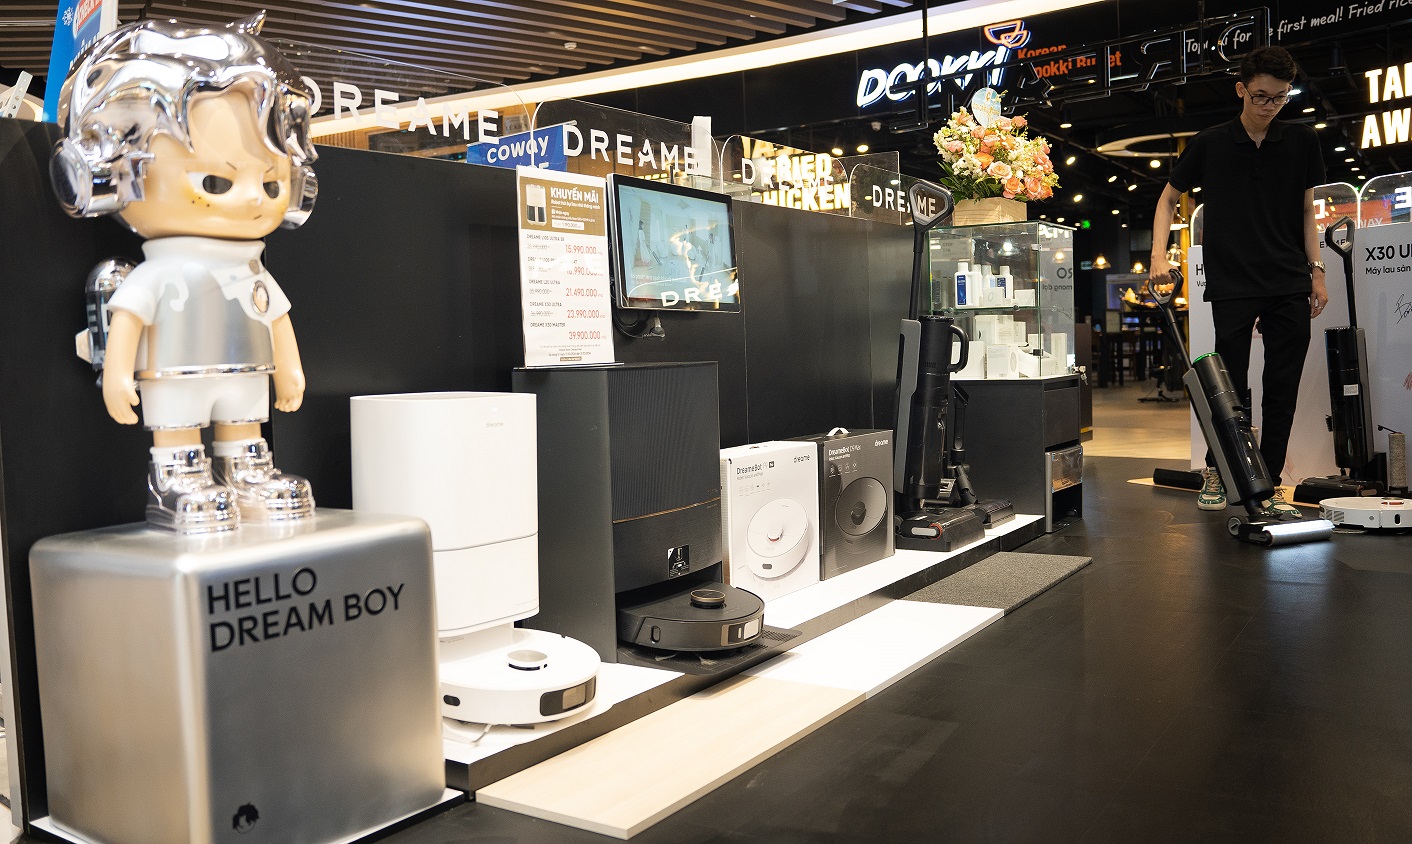 Dreame Brand Store ra mắt, cho trải nghiệm loạt robot hút bụi lau nhà hiện đại nhất - DSC01720